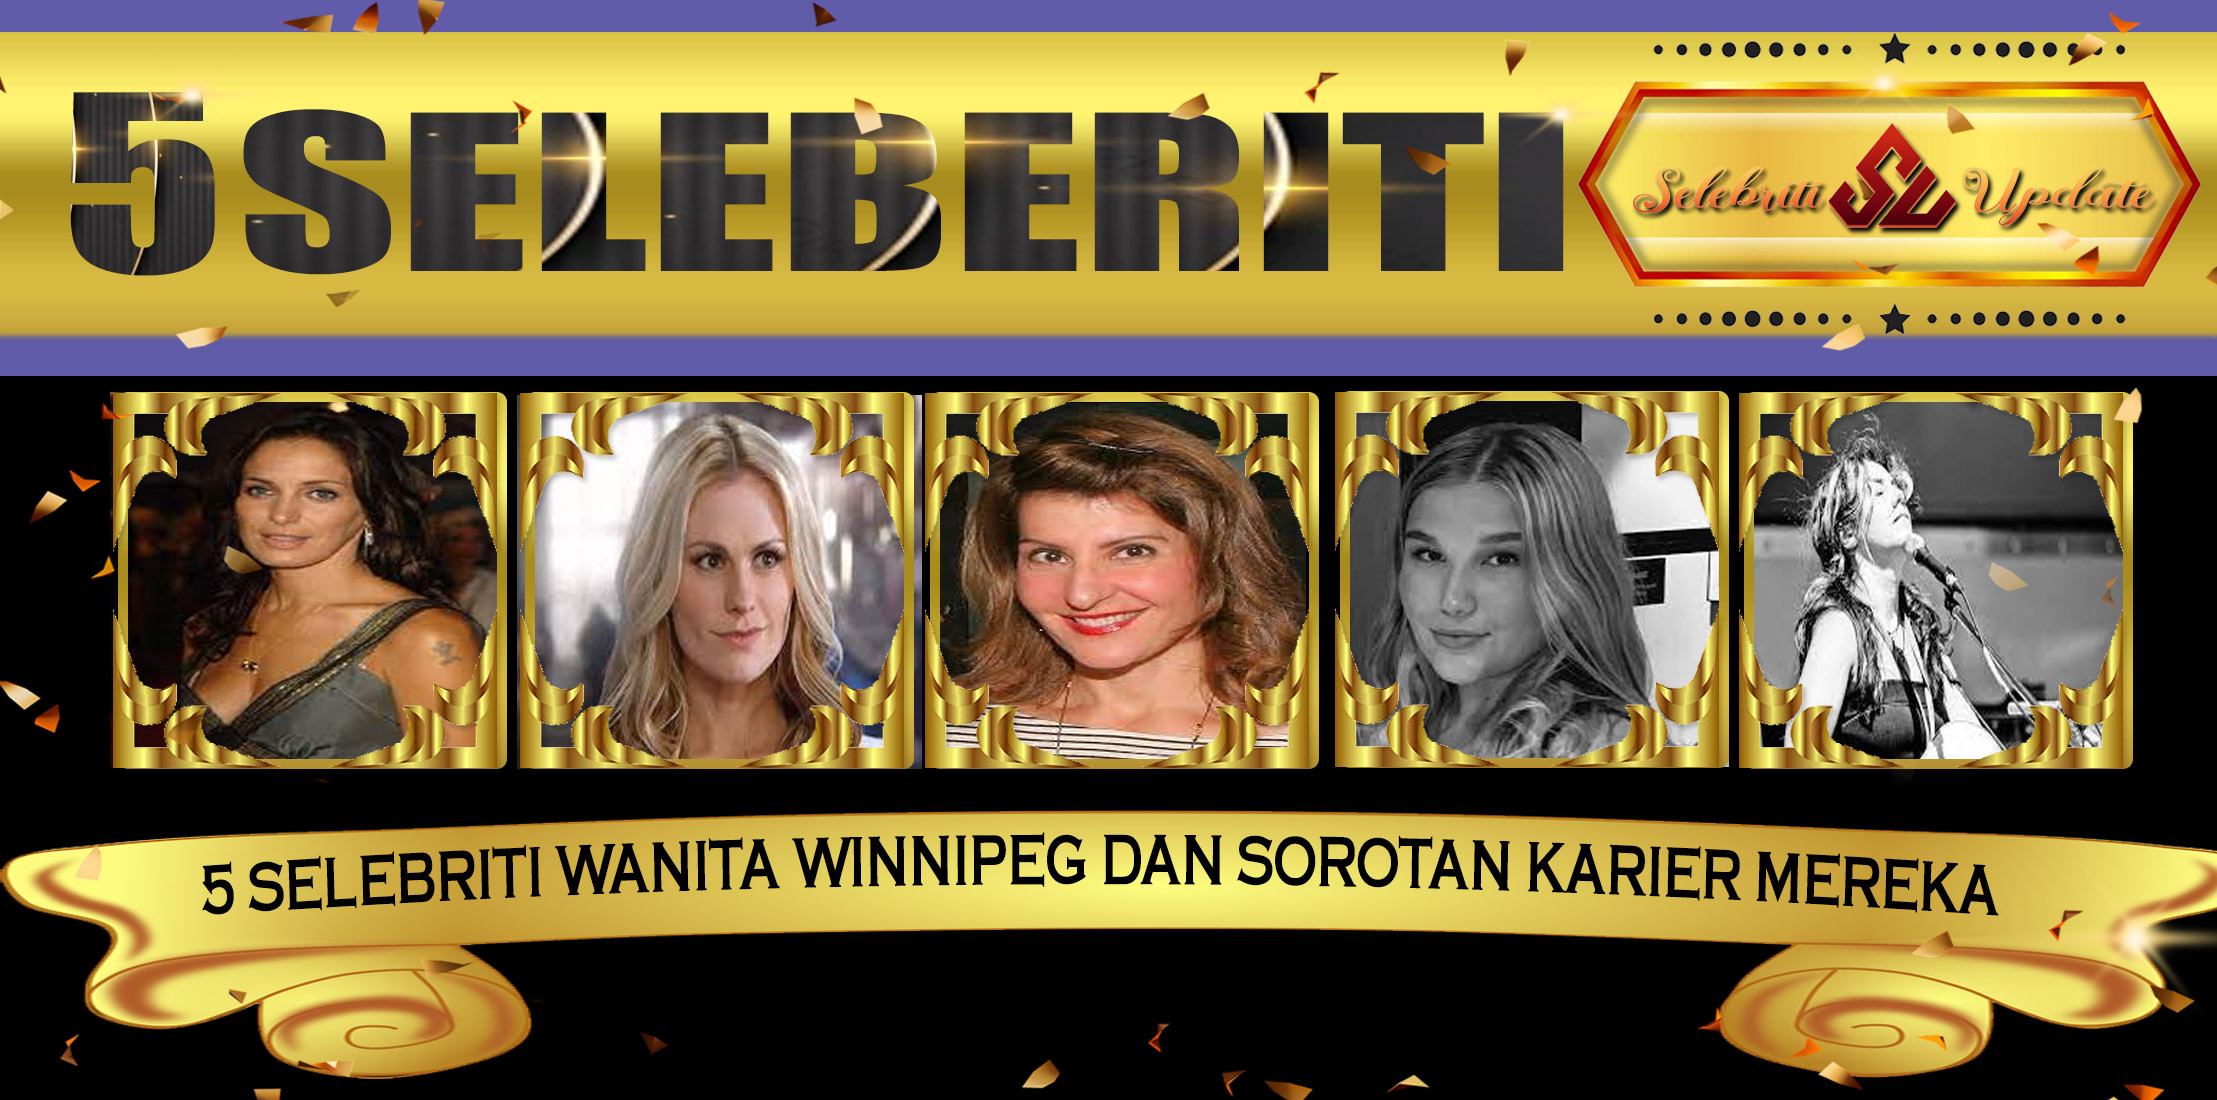 5 Selebriti Wanita Winnipeg dan Sorotan Karier Mereka